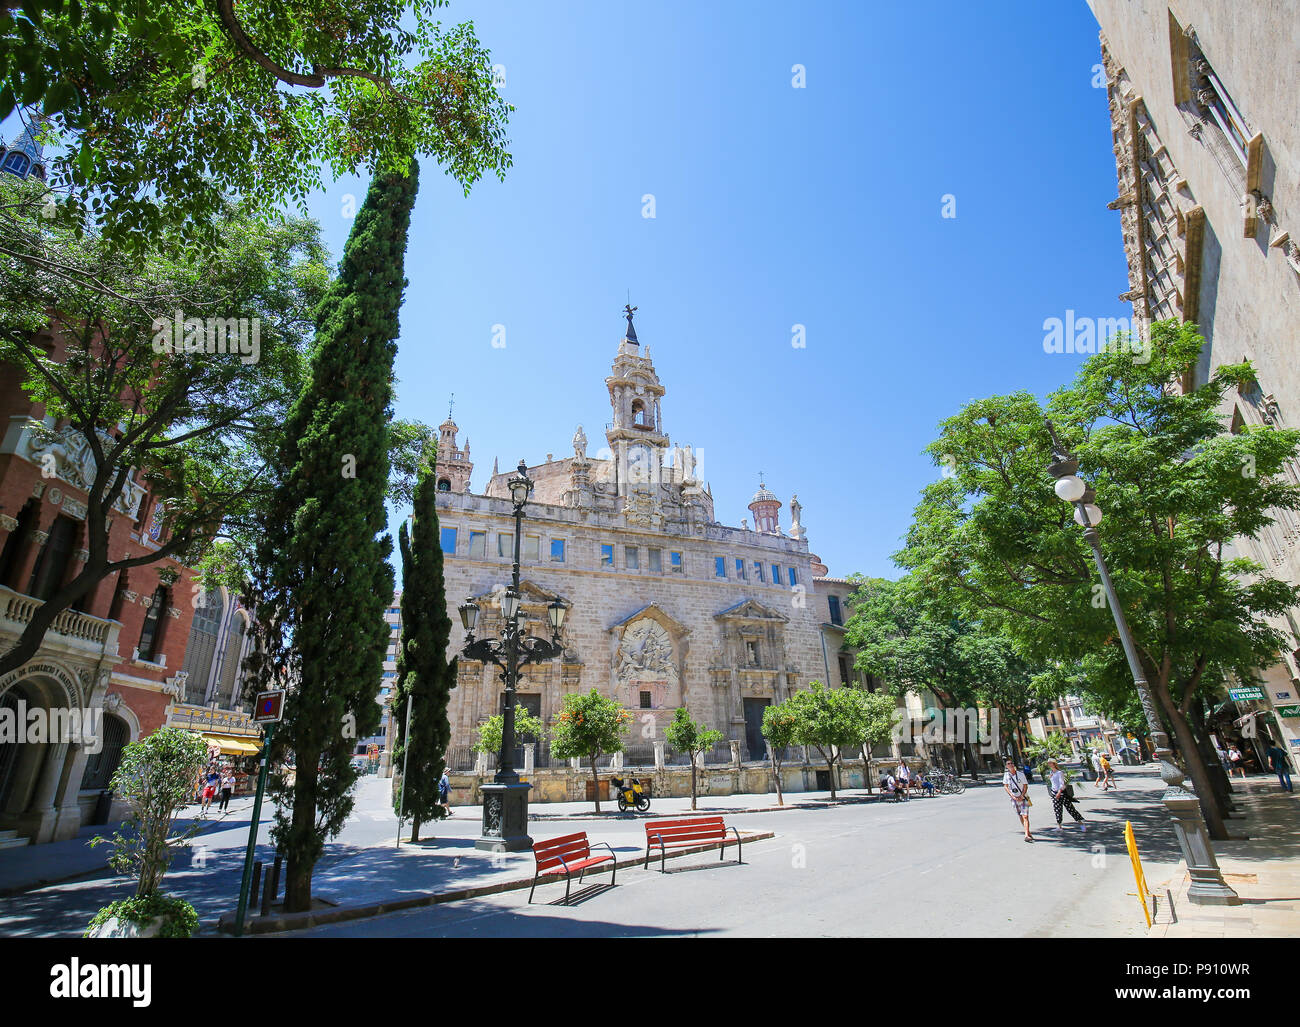 Église de Santos Juanes est une église catholique située dans le Mercat quartier de la ville de Valence, Espagne Banque D'Images